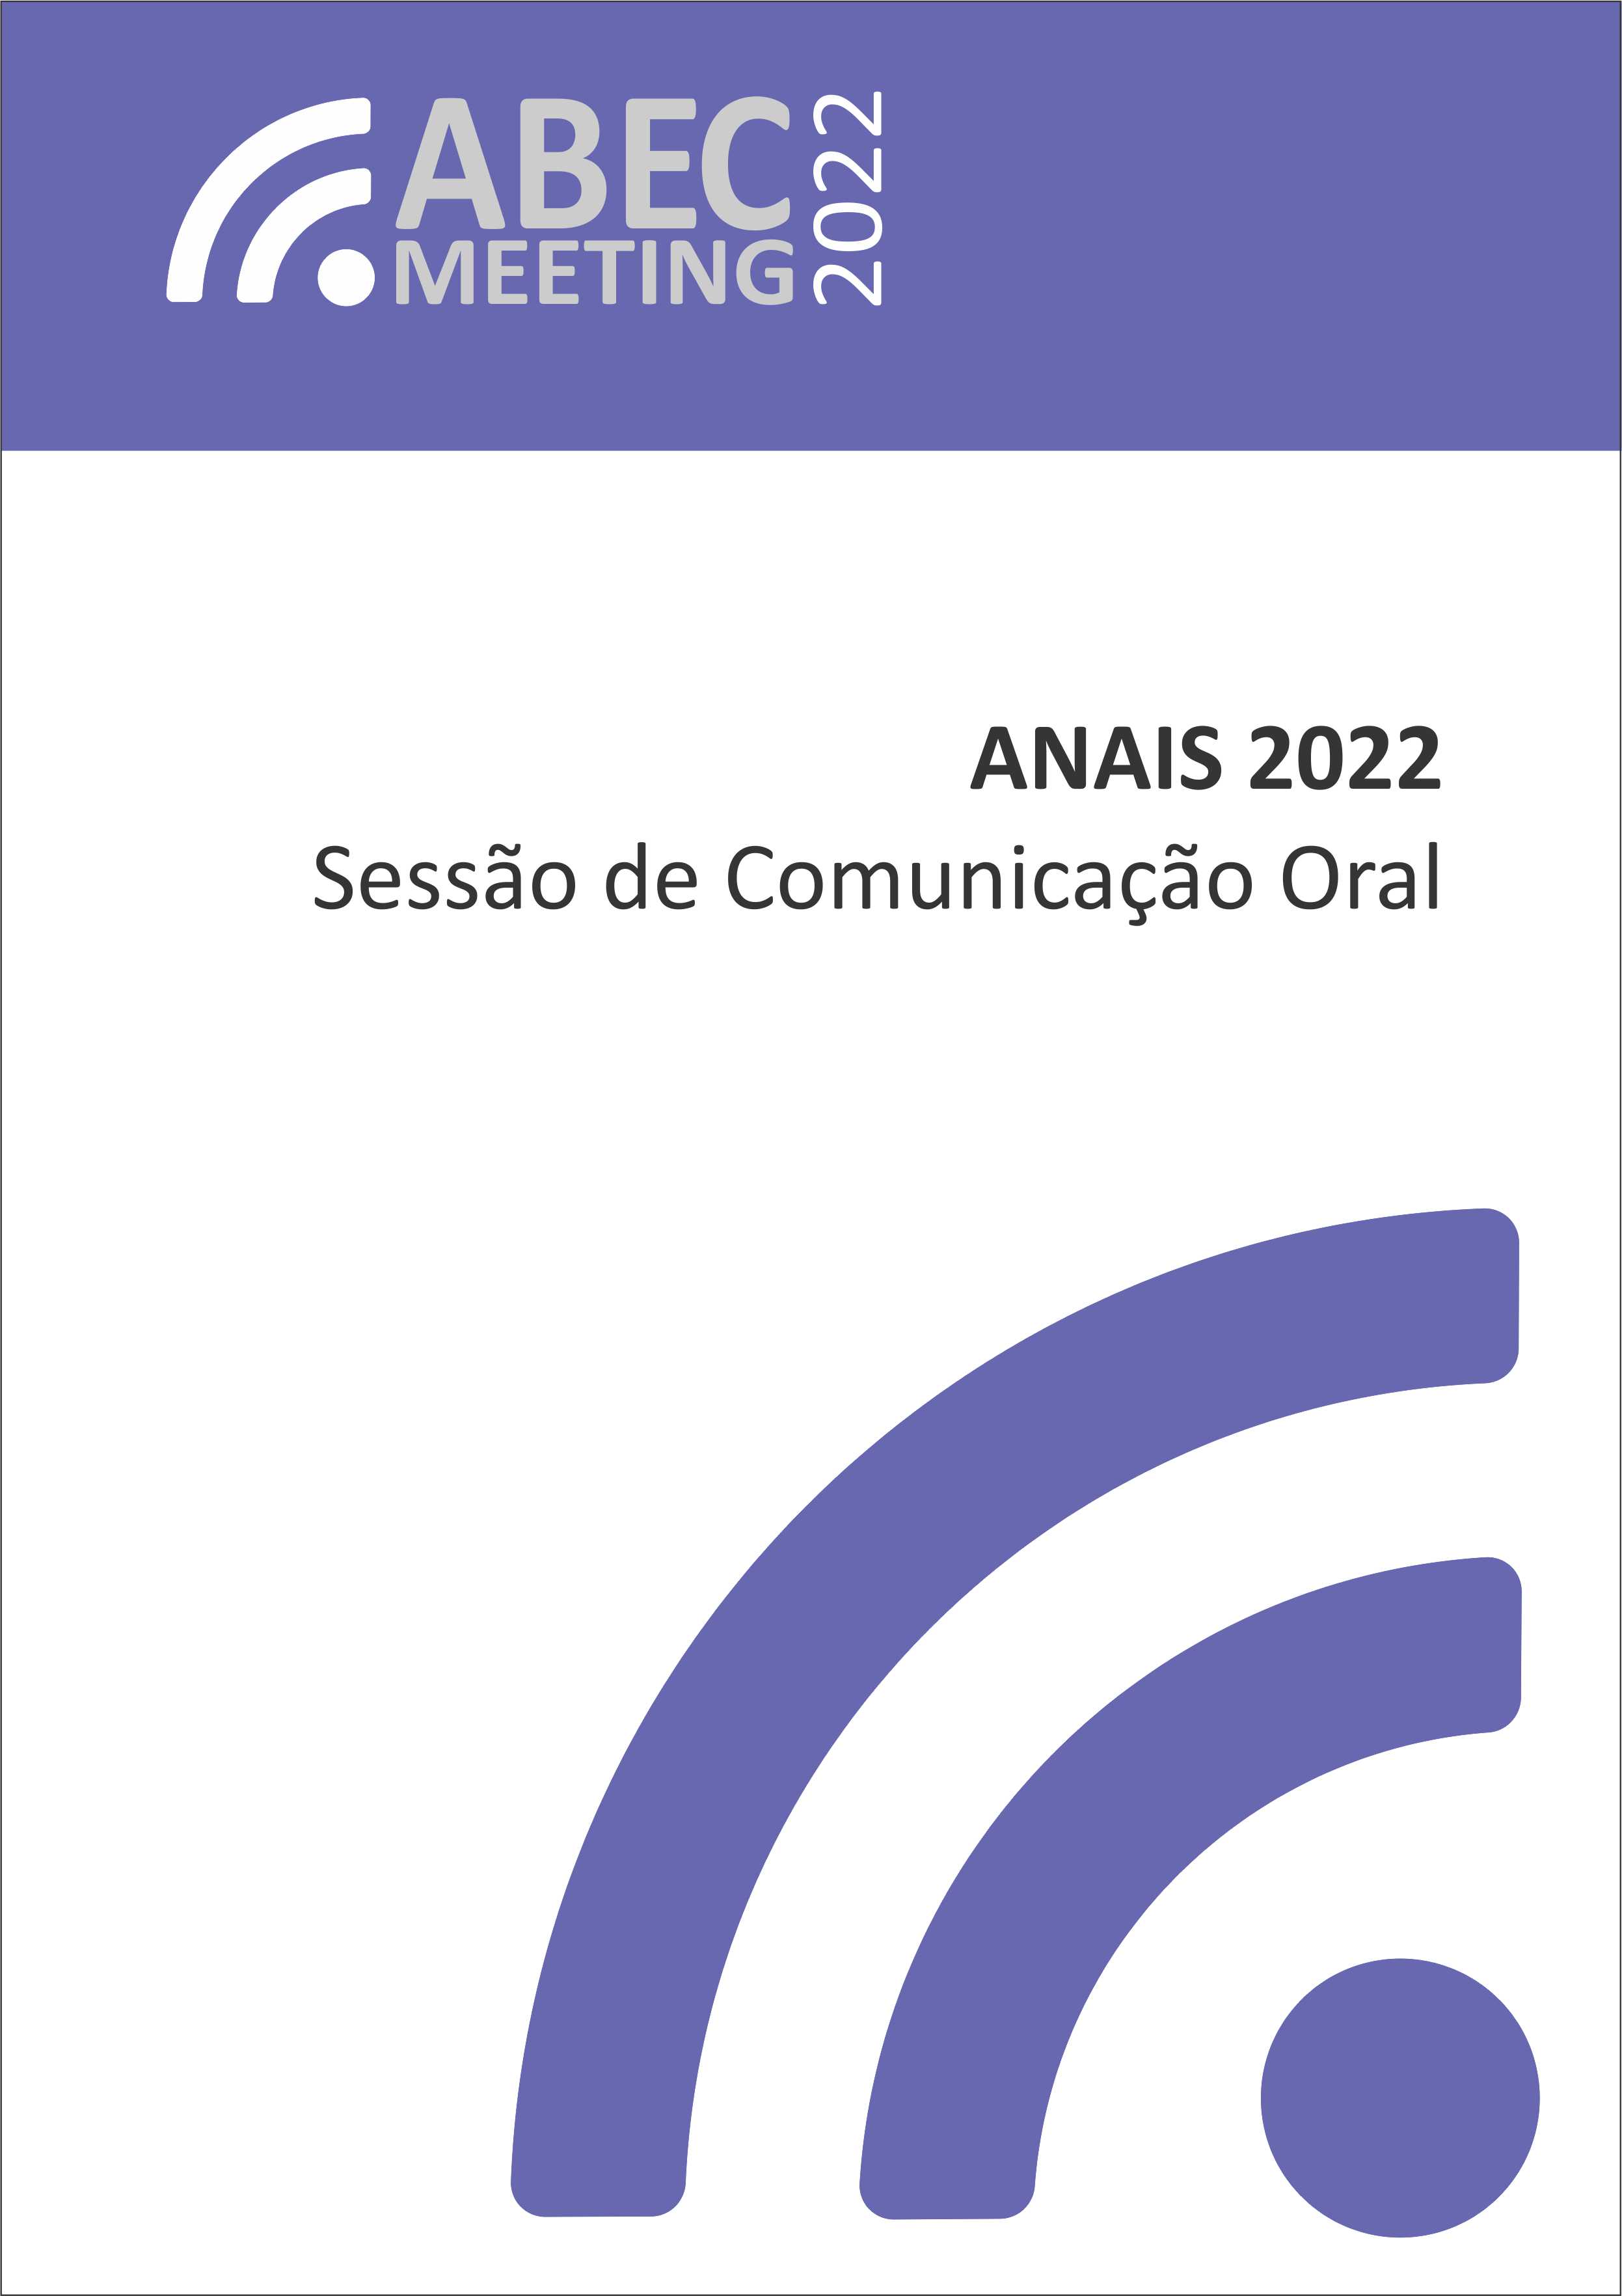 					Visualizar 2022: Abec Meeting Live 2022
				